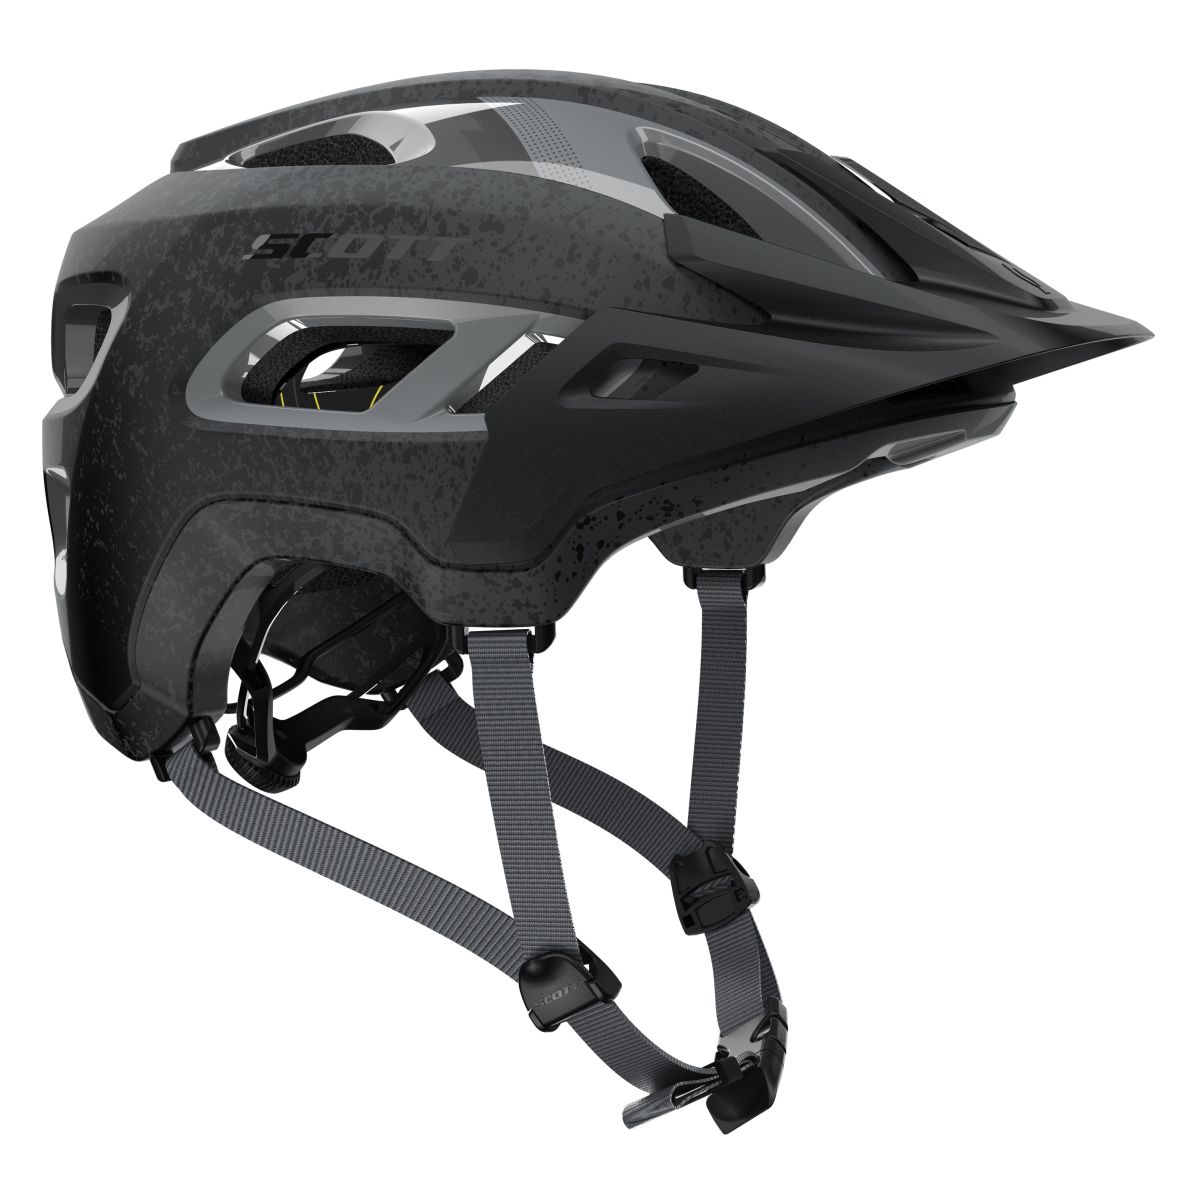 Scott Stego MTB Fahrrad Helm grau 2019 von Top Marken